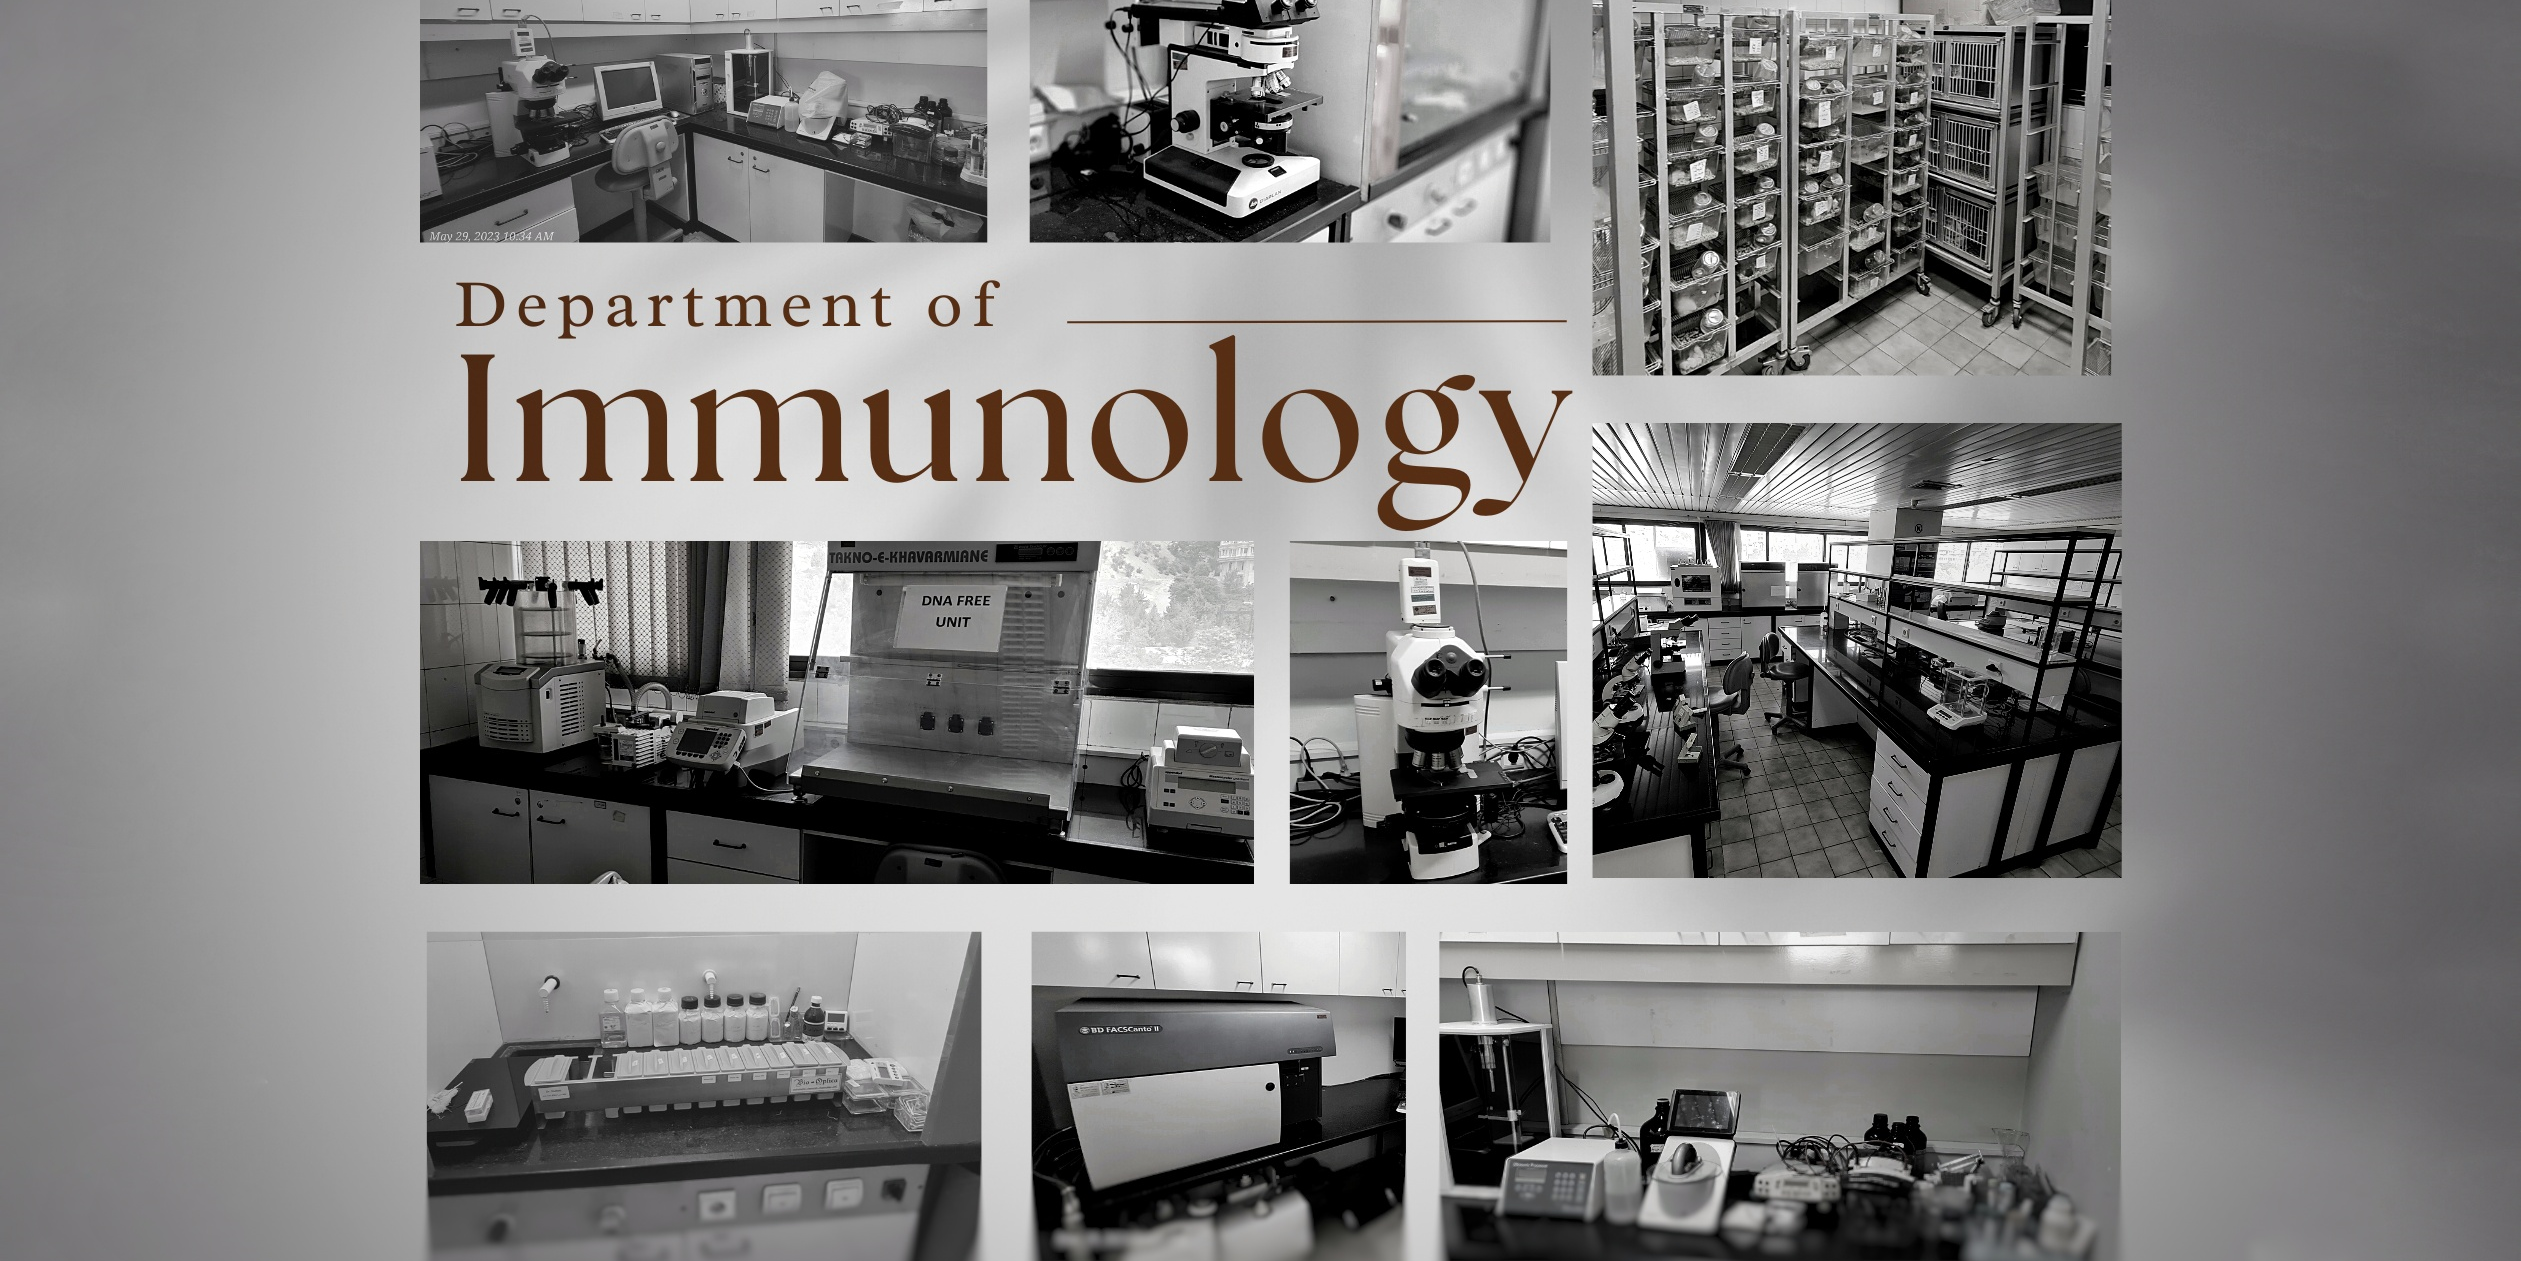  ط7 گروه ایمونولوژی department of immunology 